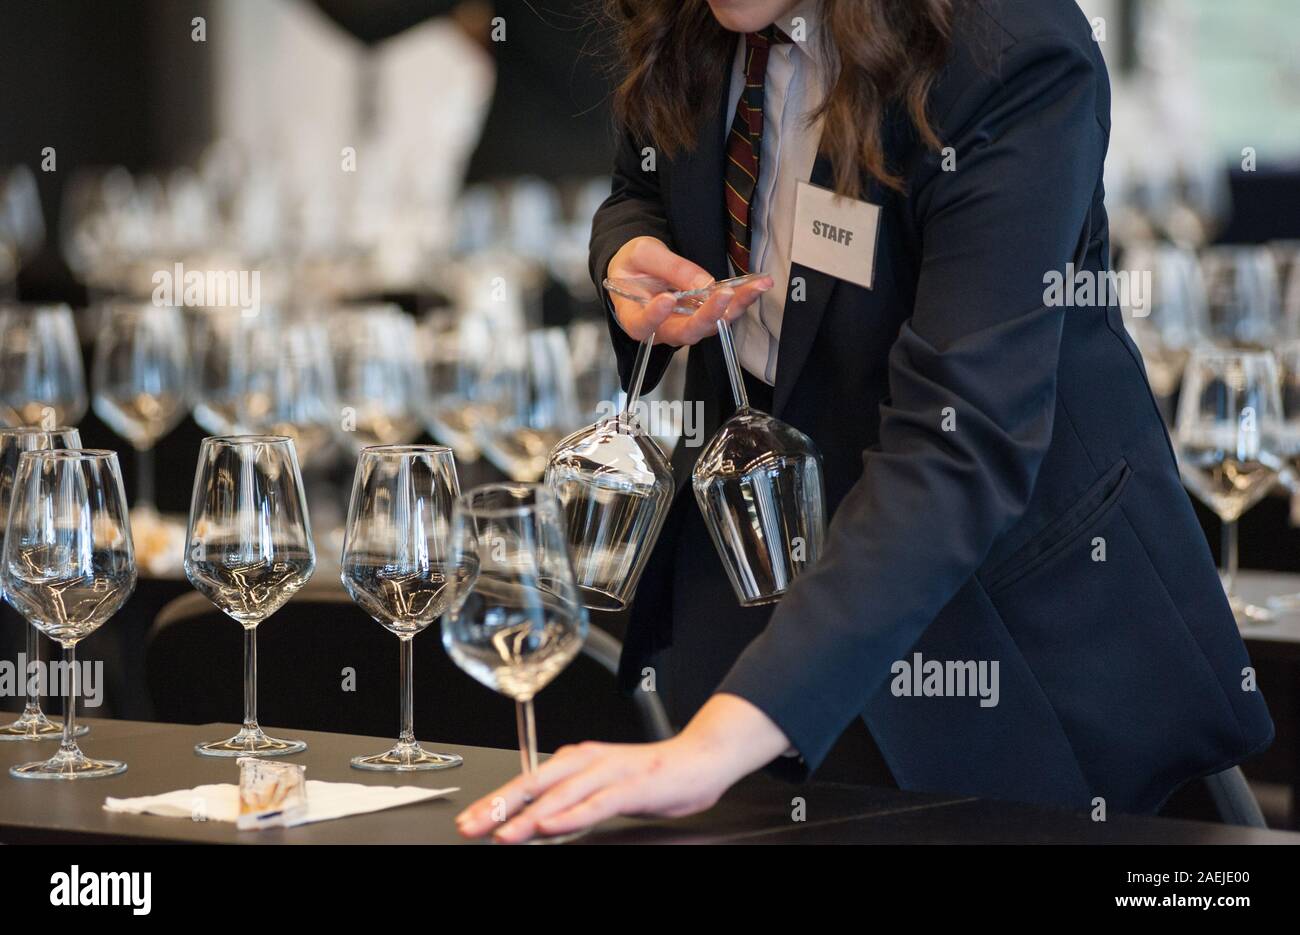 Cameriera di impostare le tabelle con cristallo gobles per una degustazione di vino workshop. Il servizio di catering e il personale di sala a lavoro. Foto Stock